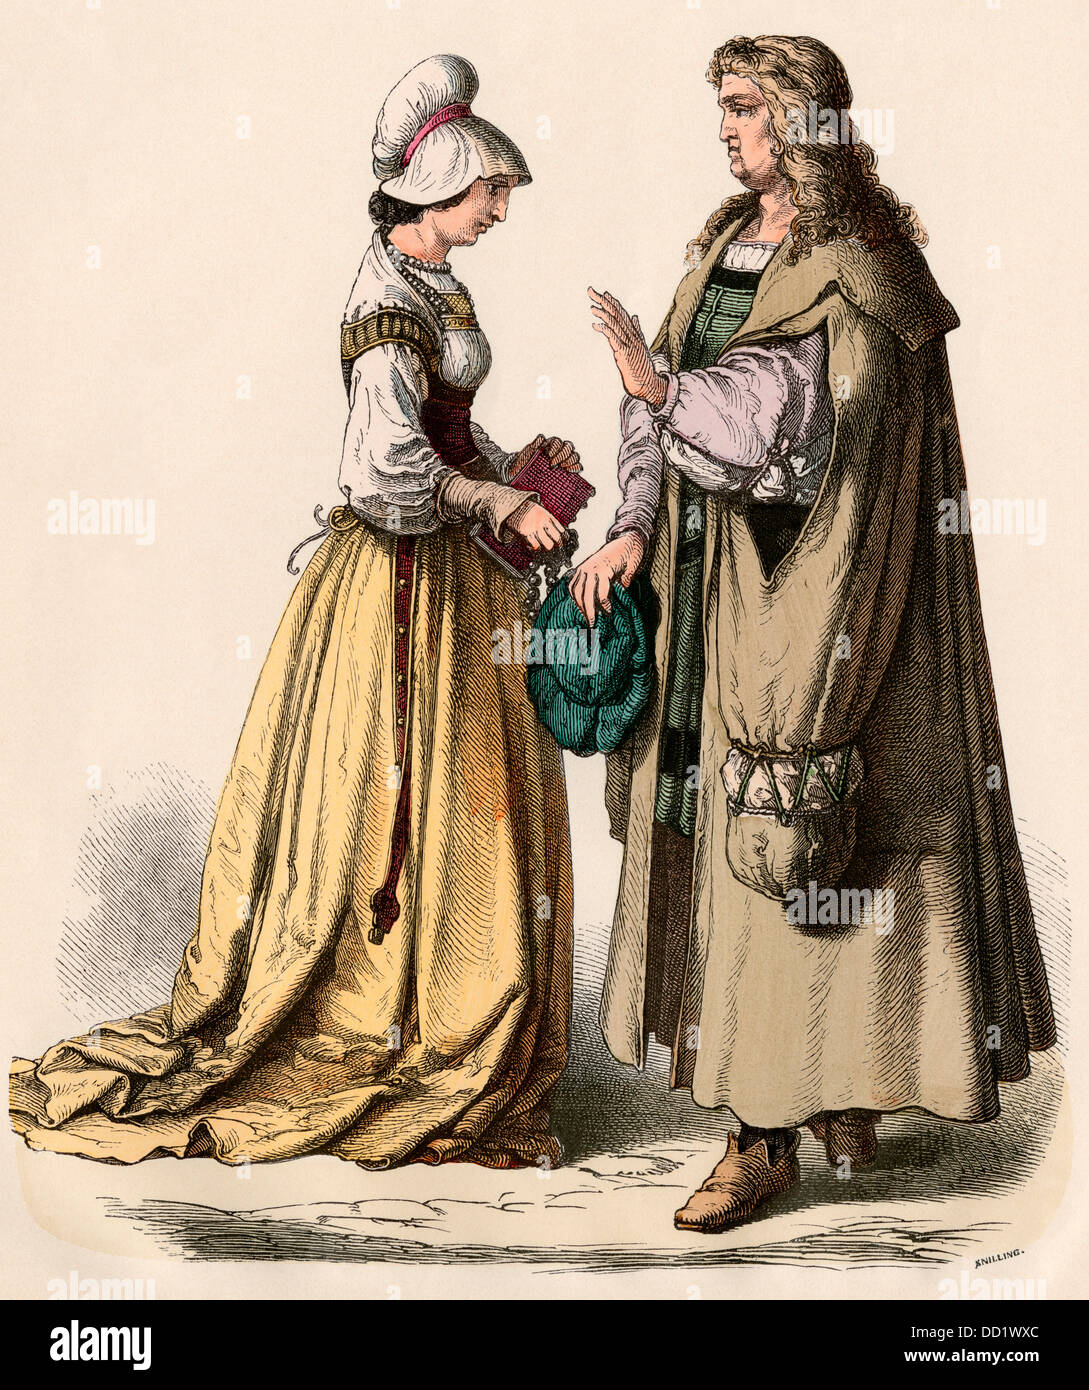 Chercheur allemand et une femme avec un livre, 1500s. Impression couleur à la main Banque D'Images